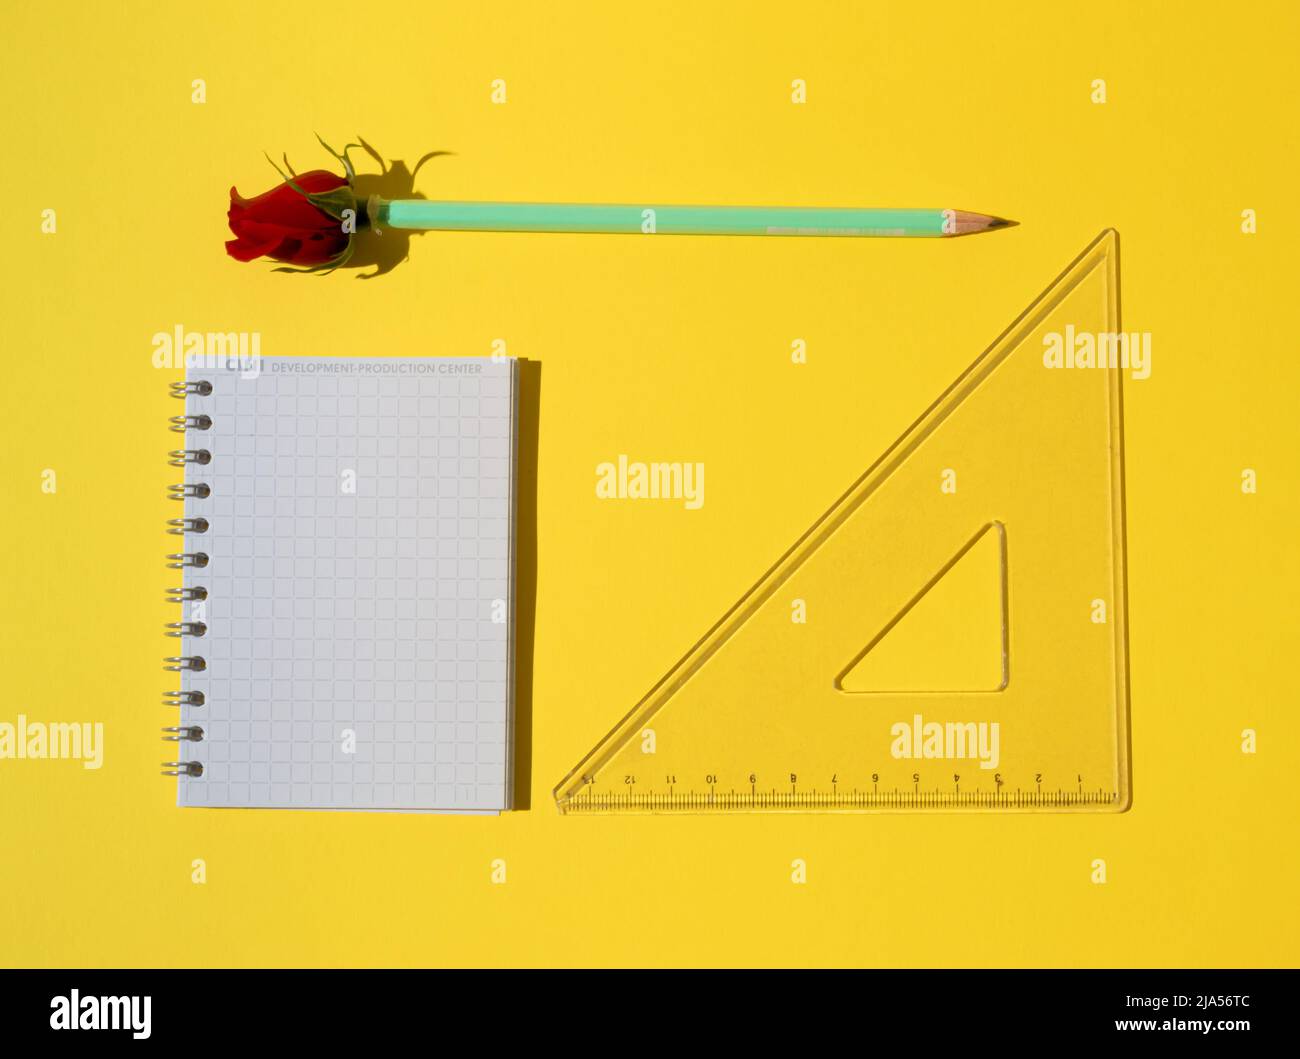 Ein Schulbuch und ein Bleistift mit einer roten Rose auf gelbem Hintergrund. Minimaler Geschäftsinus-Ansatz. Stockfoto